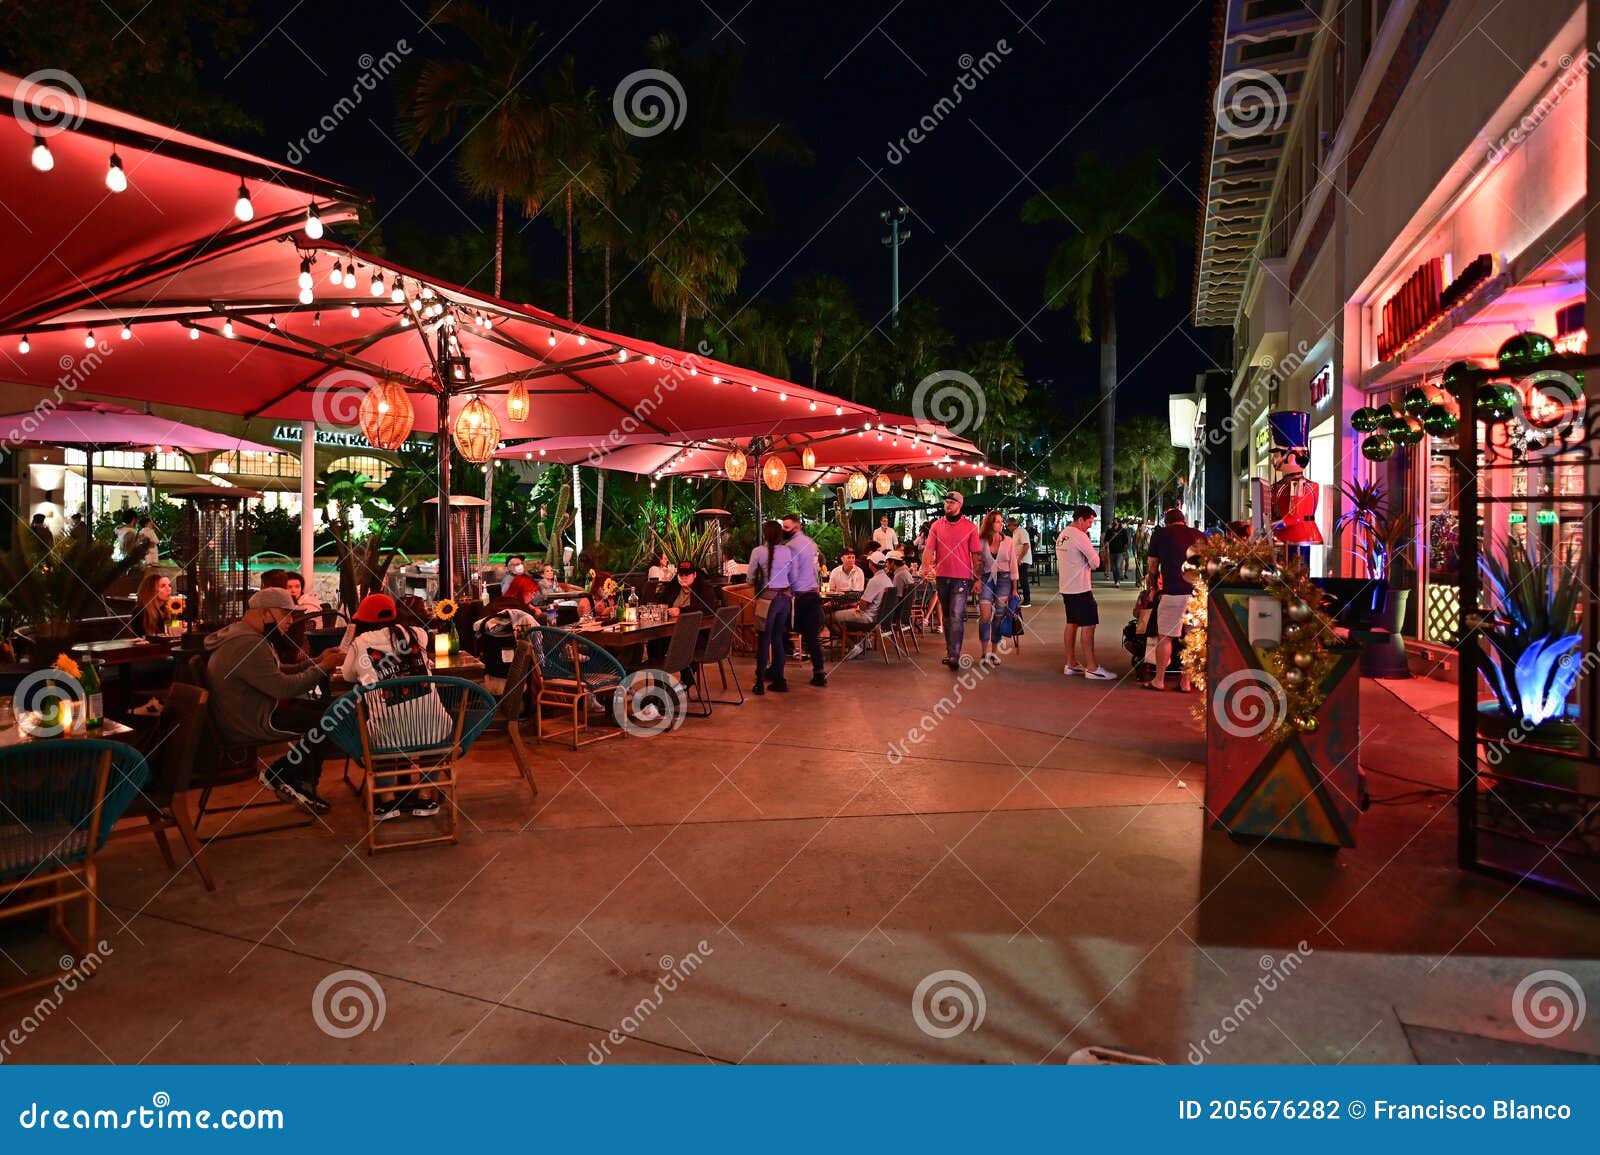 Lincoln Road Mall, Miami Beach, FL